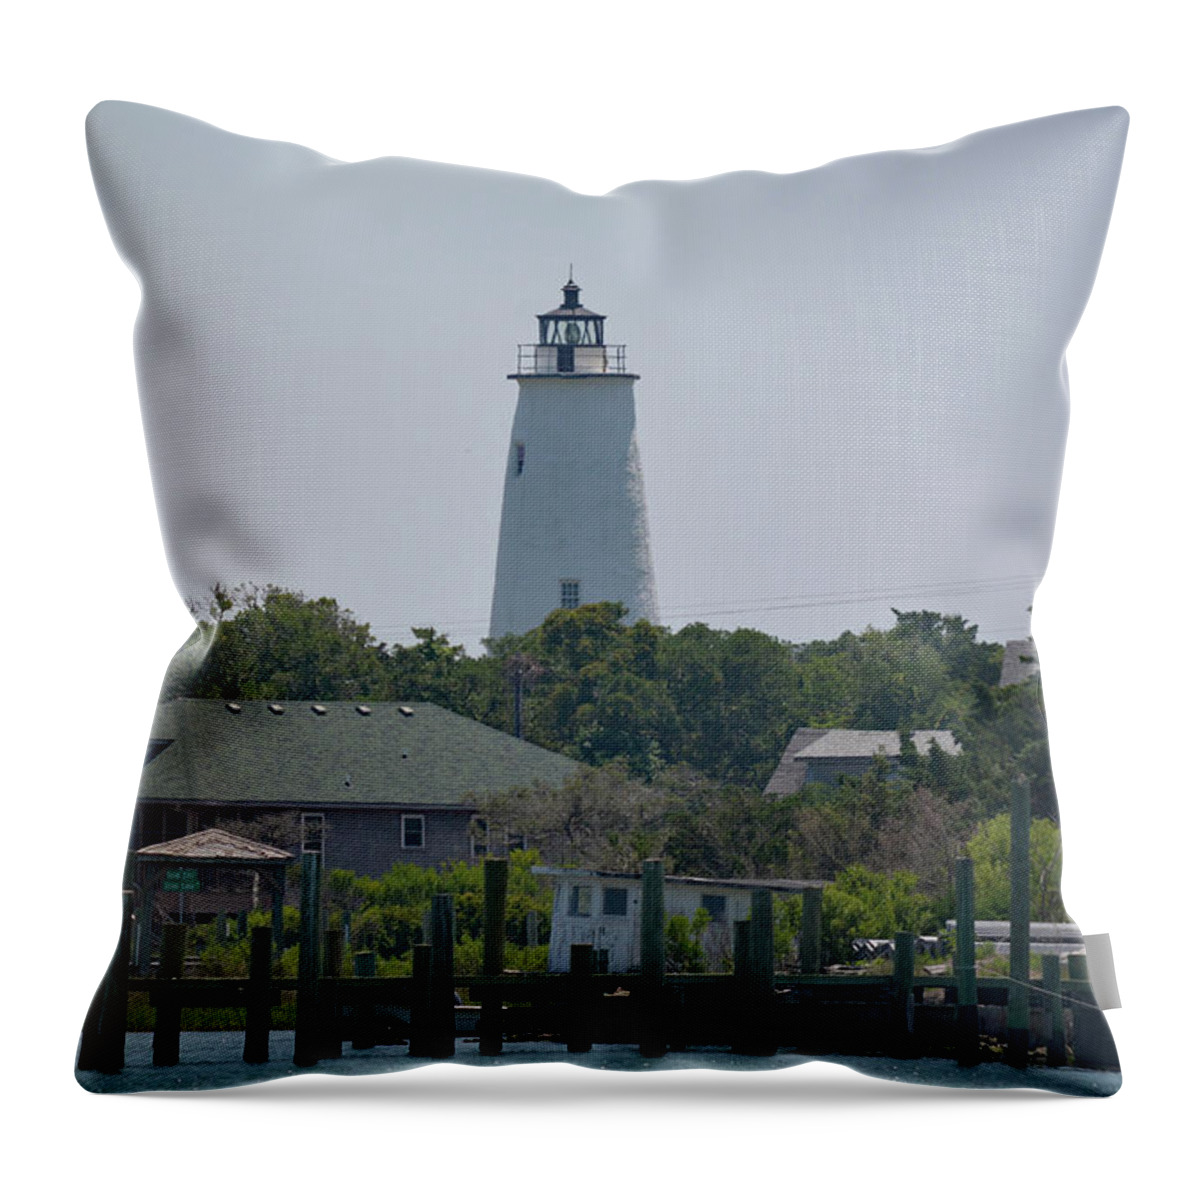 Ocracoke Island Lighthouse Throw Pillow featuring the photograph Ocracoke Island Lighthouse by Jimmie Bartlett